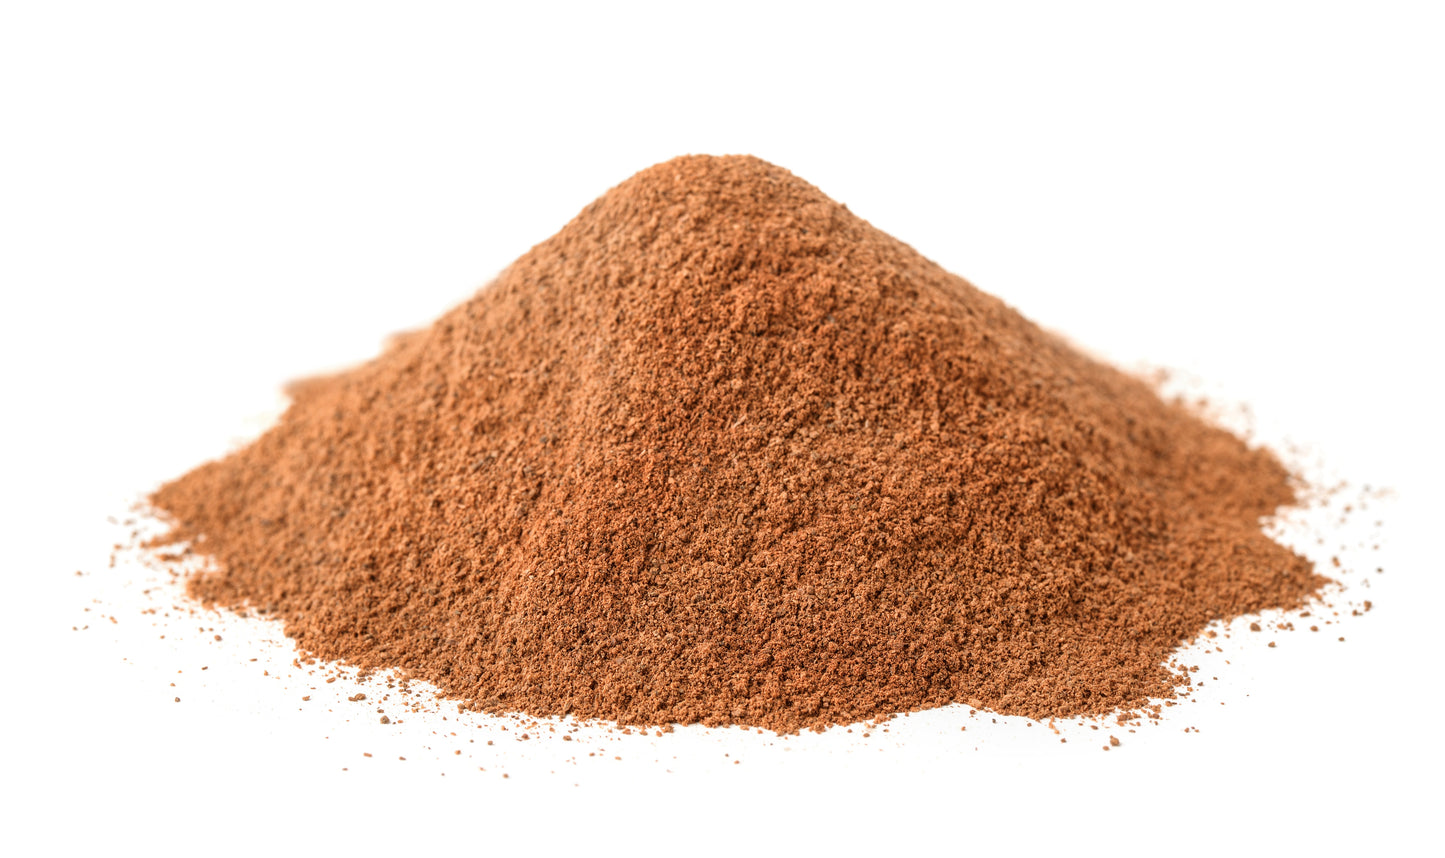 Cinnamon Ground, Net Weight 1.65 oz